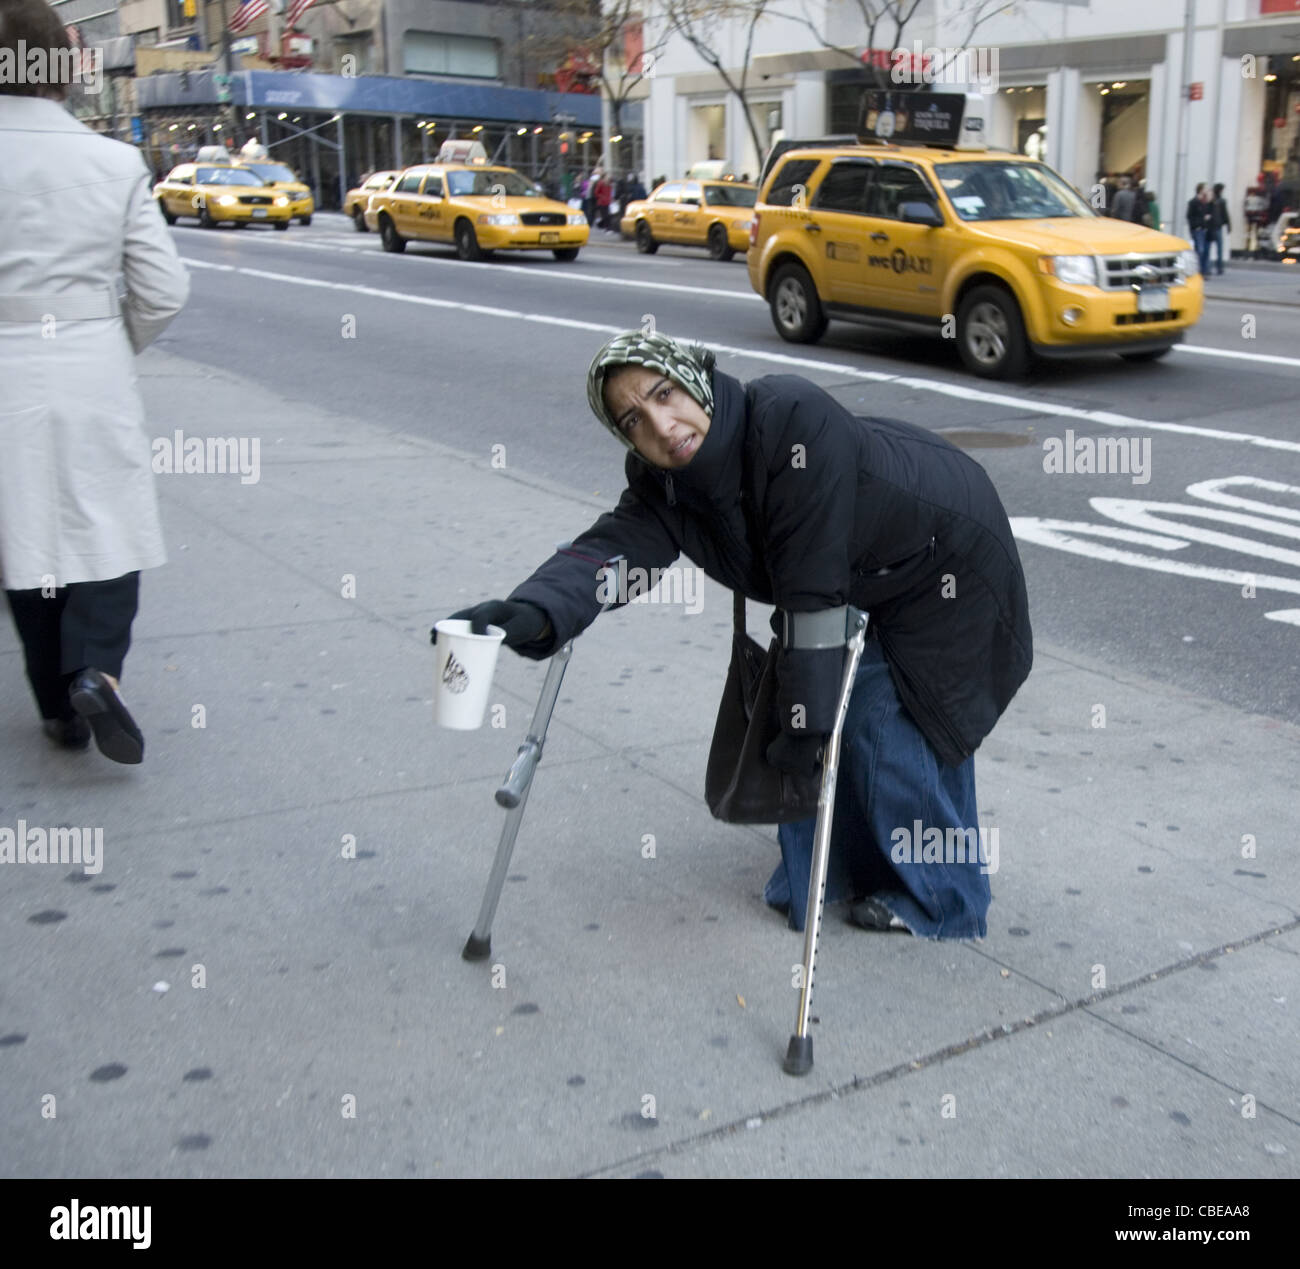 Personnes handicapées mendiant professionnel sur la 5e Avenue à New York. Banque D'Images